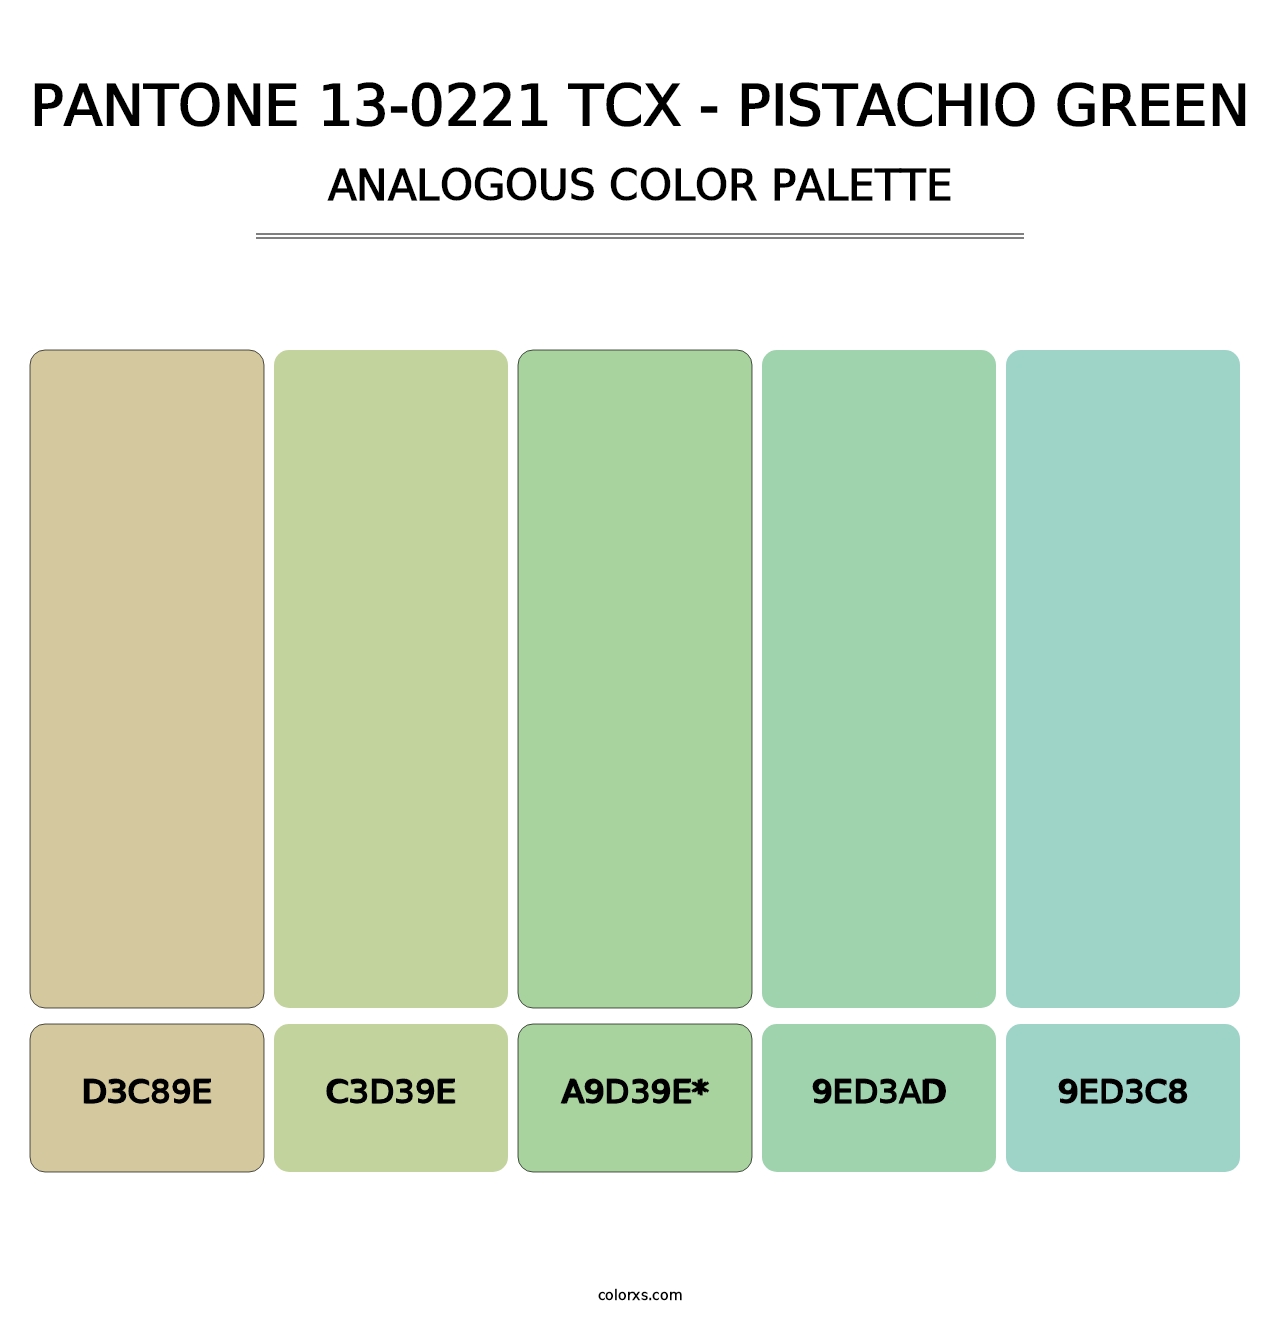 PANTONE 13-0221 TCX - Pistachio Green - Analogous Color Palette